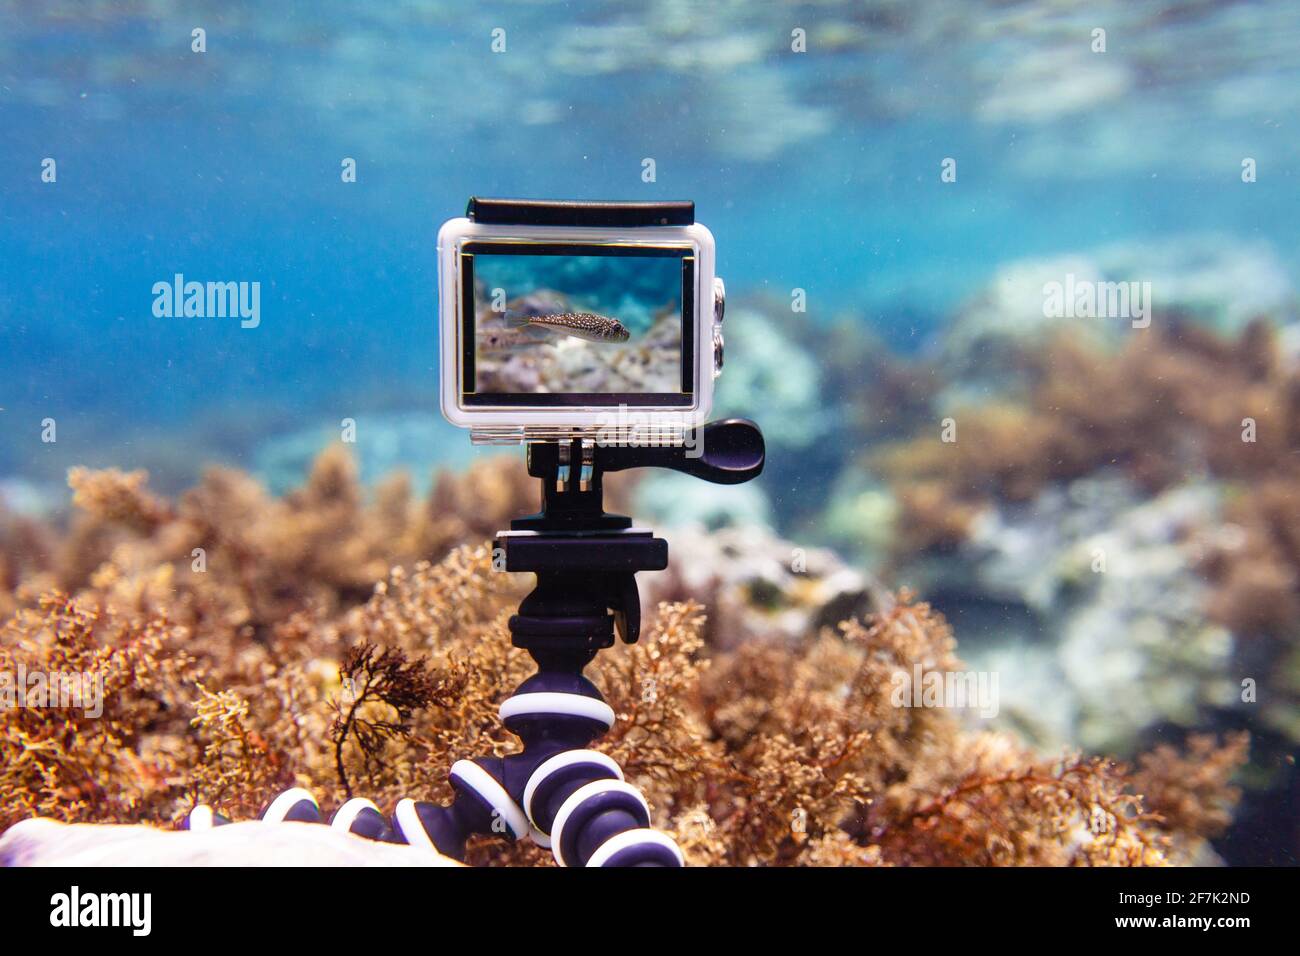 Sede Marco Polo Sonrisa Uso de la cámara de acción en una caja resistente al agua en una mini  plegable flexible trípode para hacer fotos y vídeos bajo el agua en modo de  visualización en directo